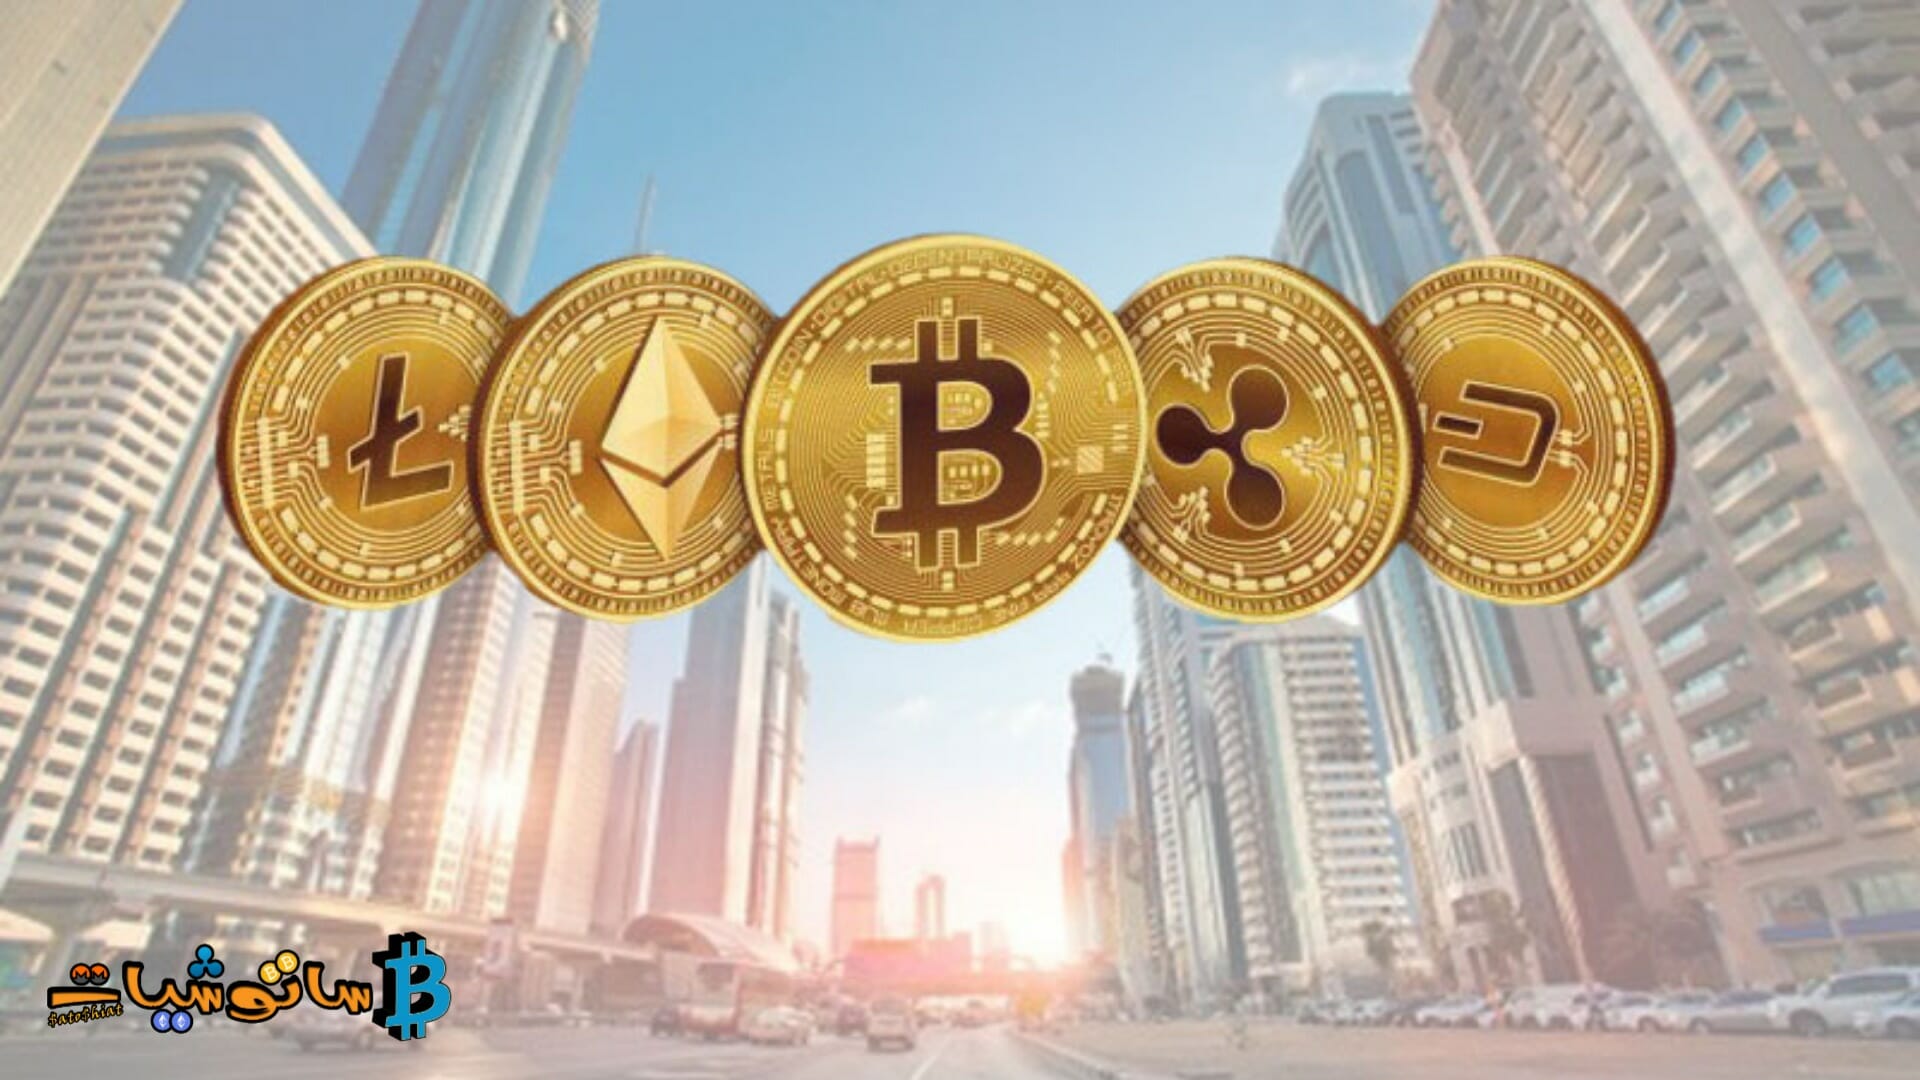 تصدر دبي قواعد تسويق العملات المشفرة لحماية المستثمرين بشكل أفضل